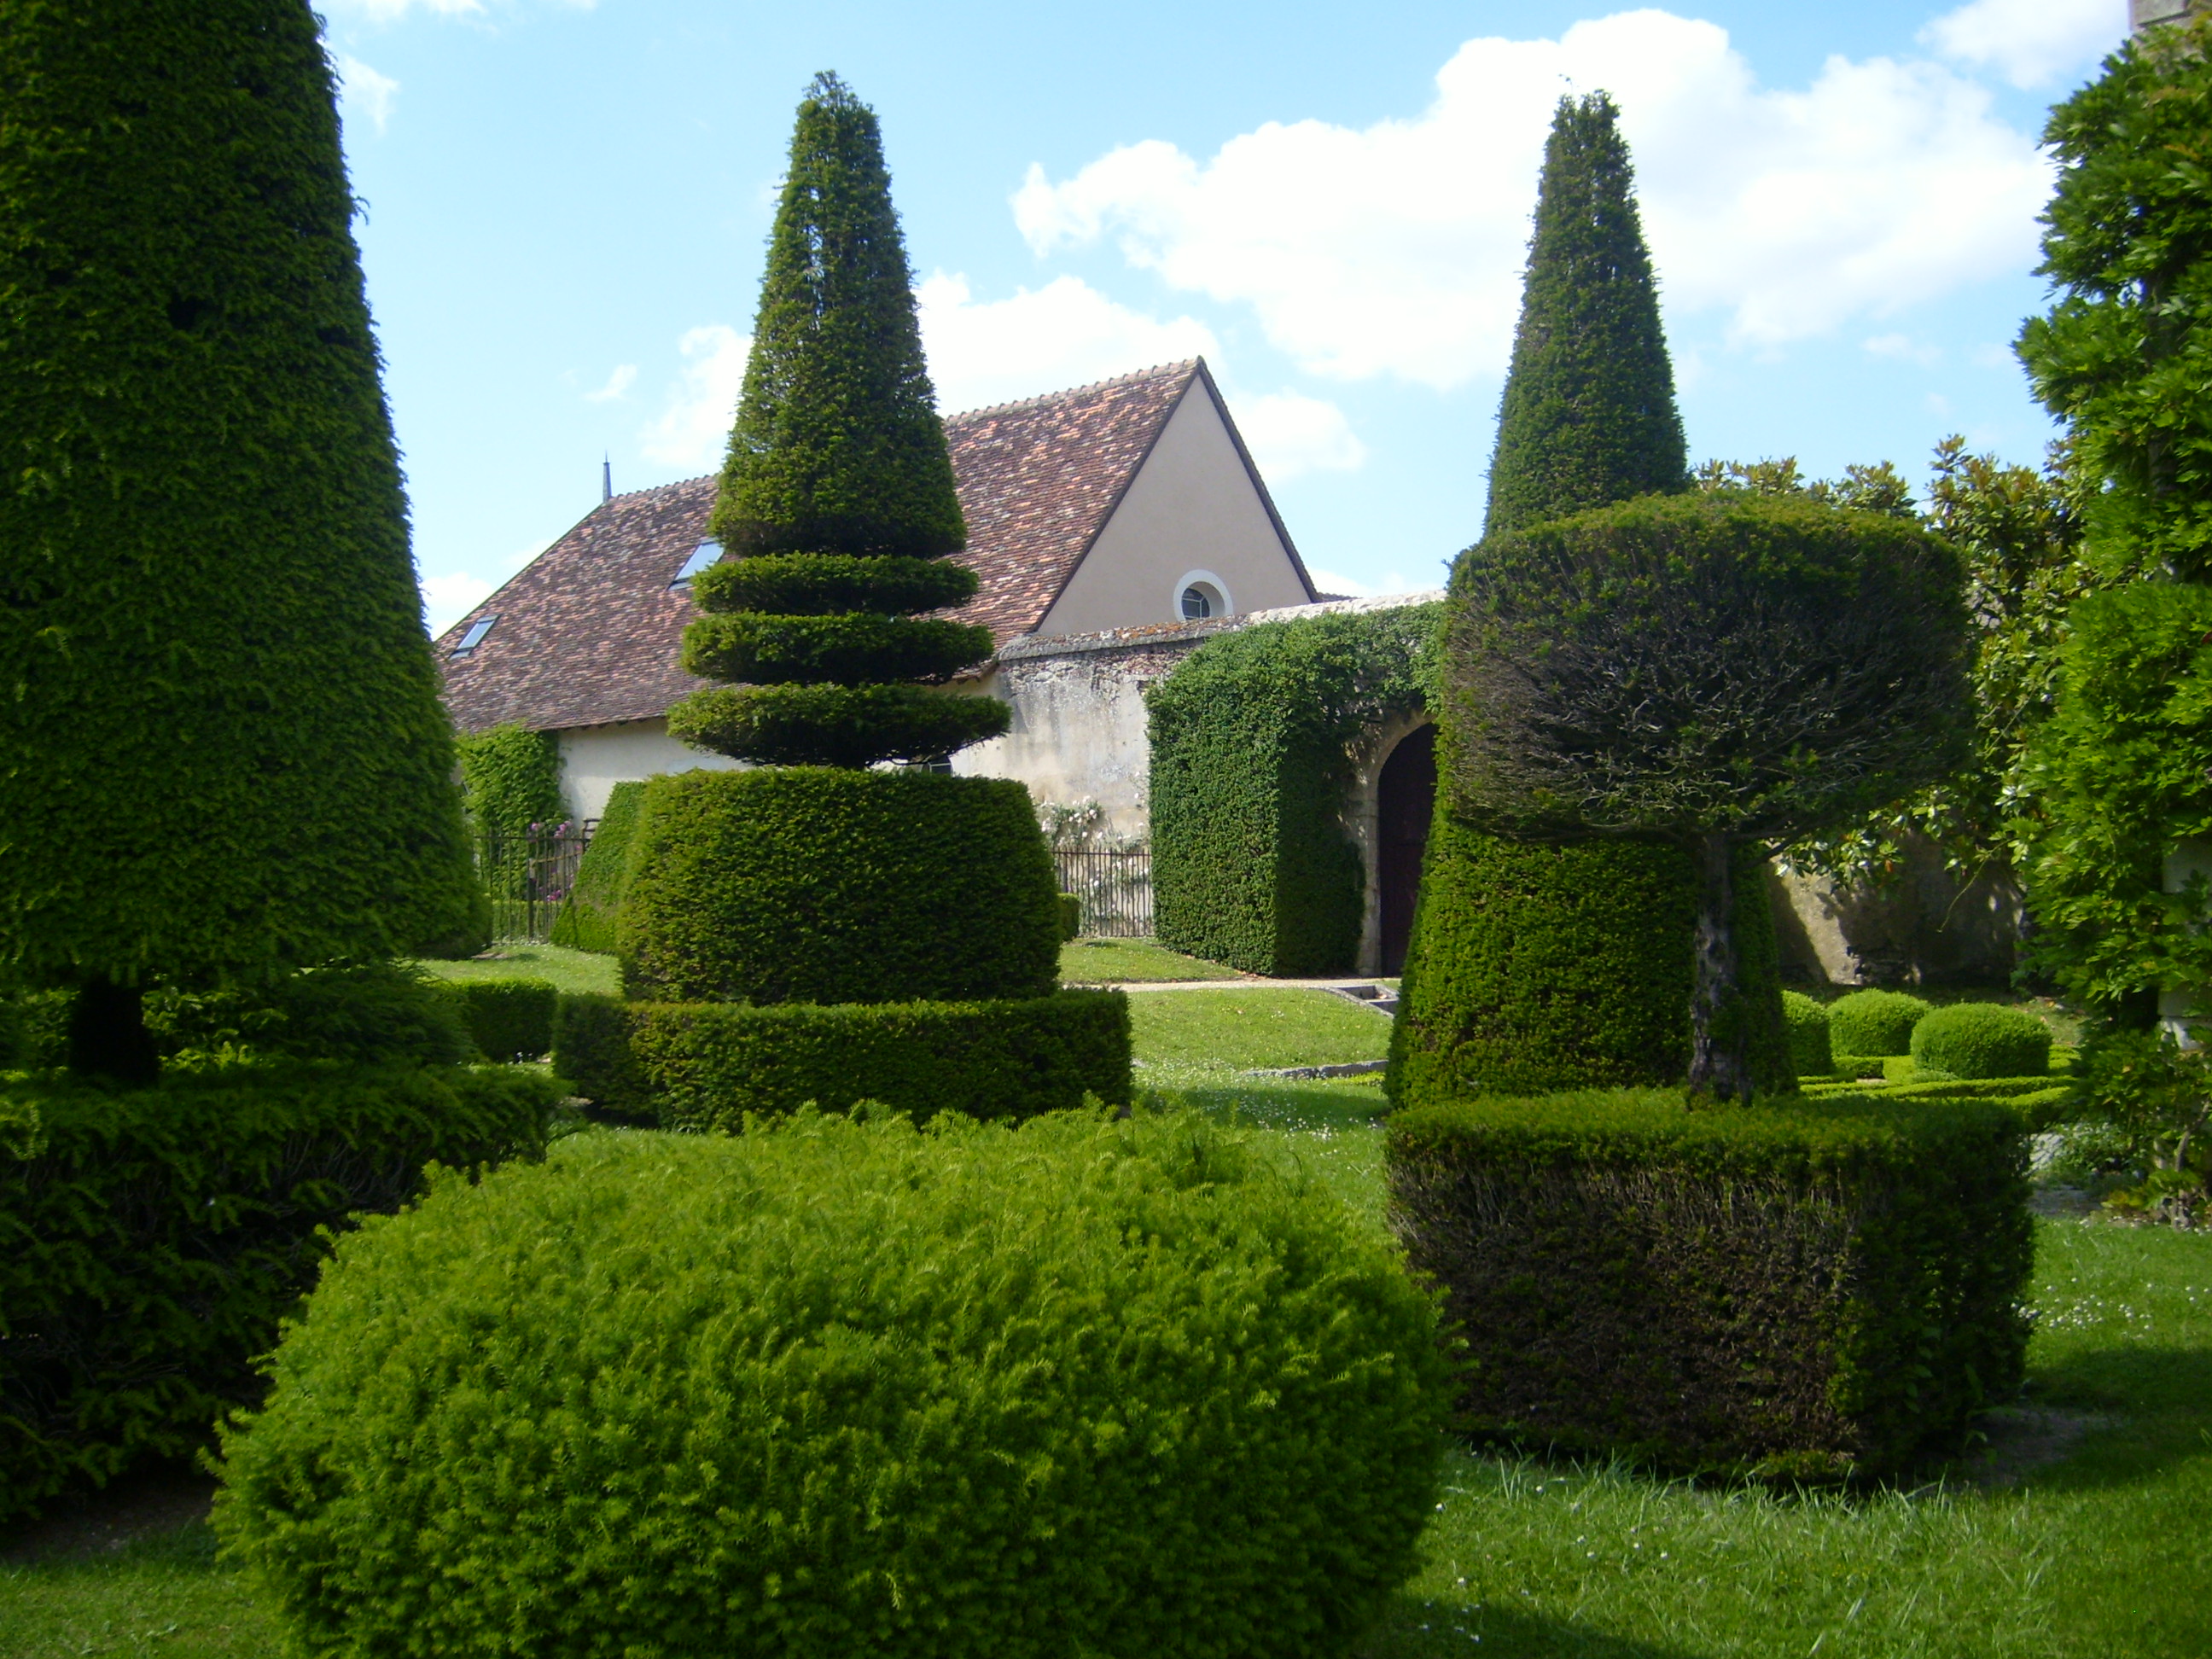 Chateau d'Azay-le-Ferron Topiary